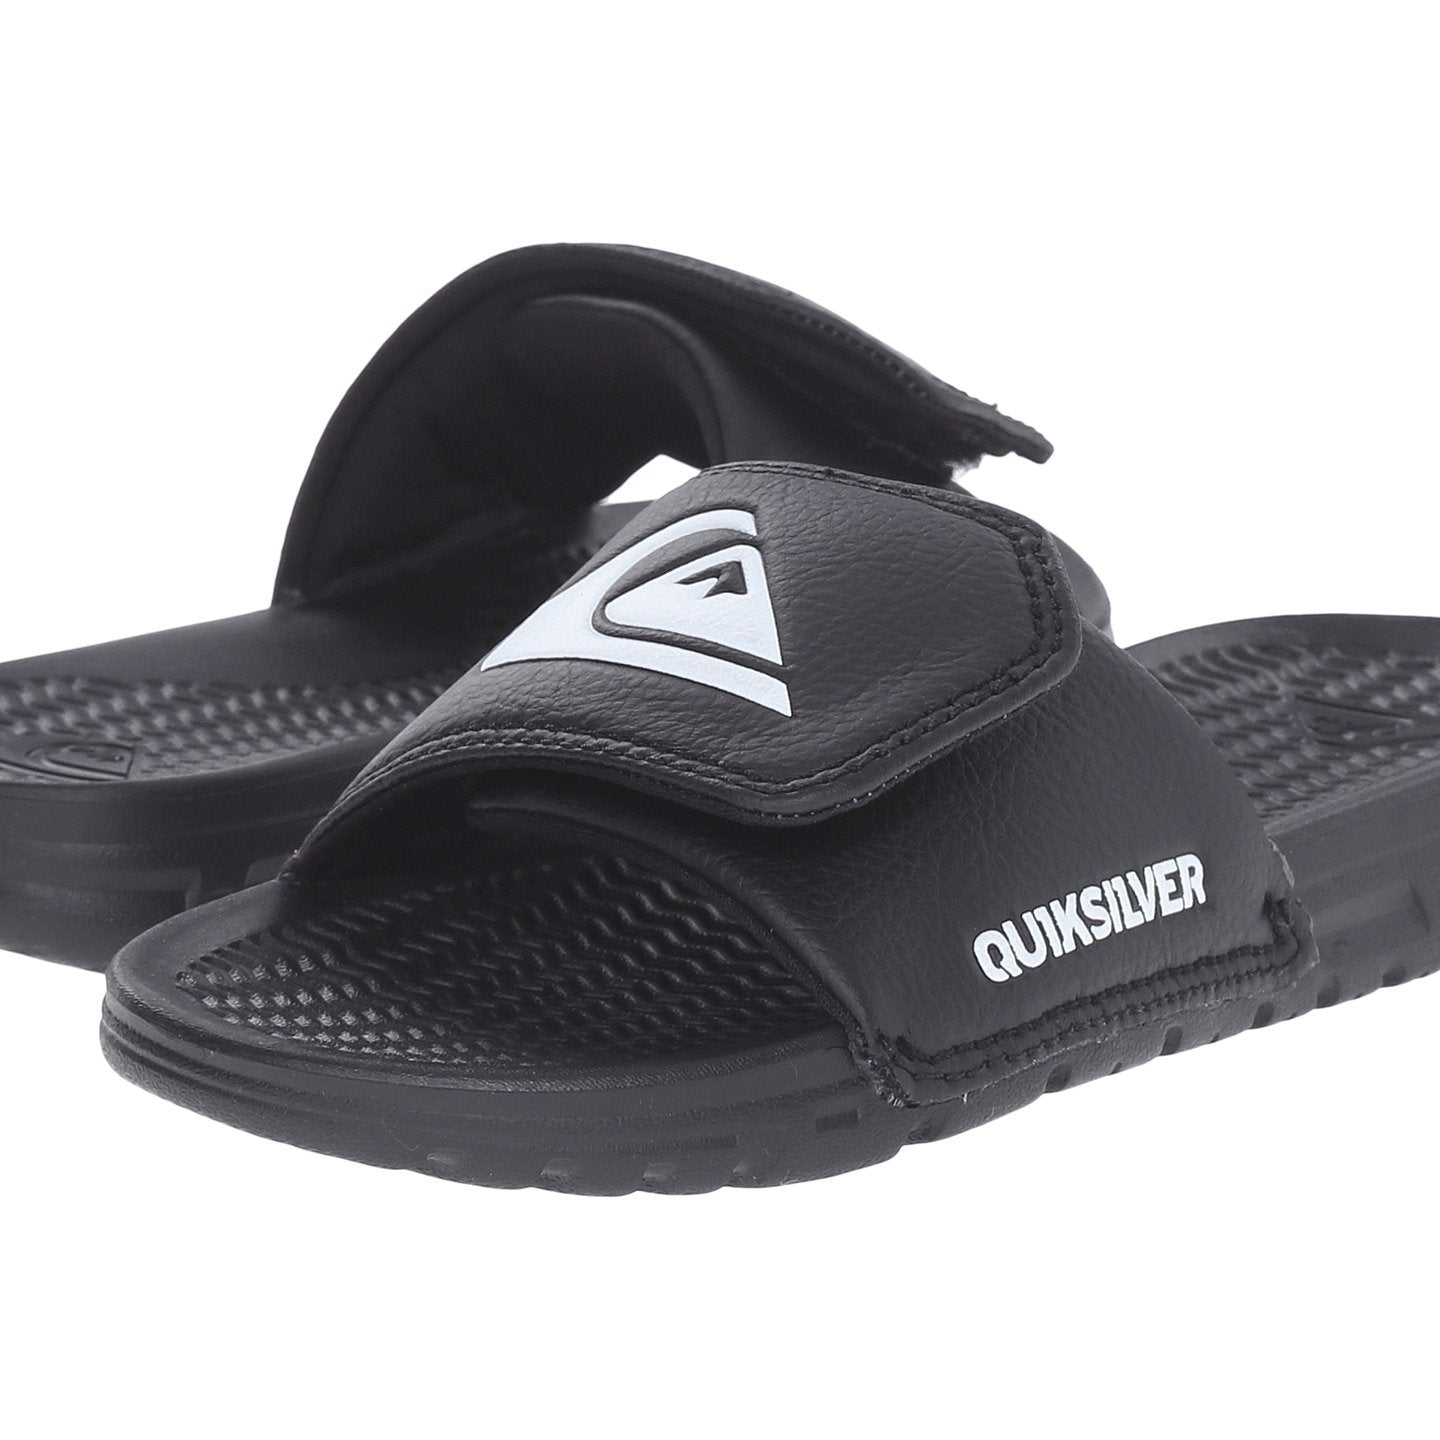 Quiksilver Shoreline Adjust Youth Sandal Solid Black 10 C